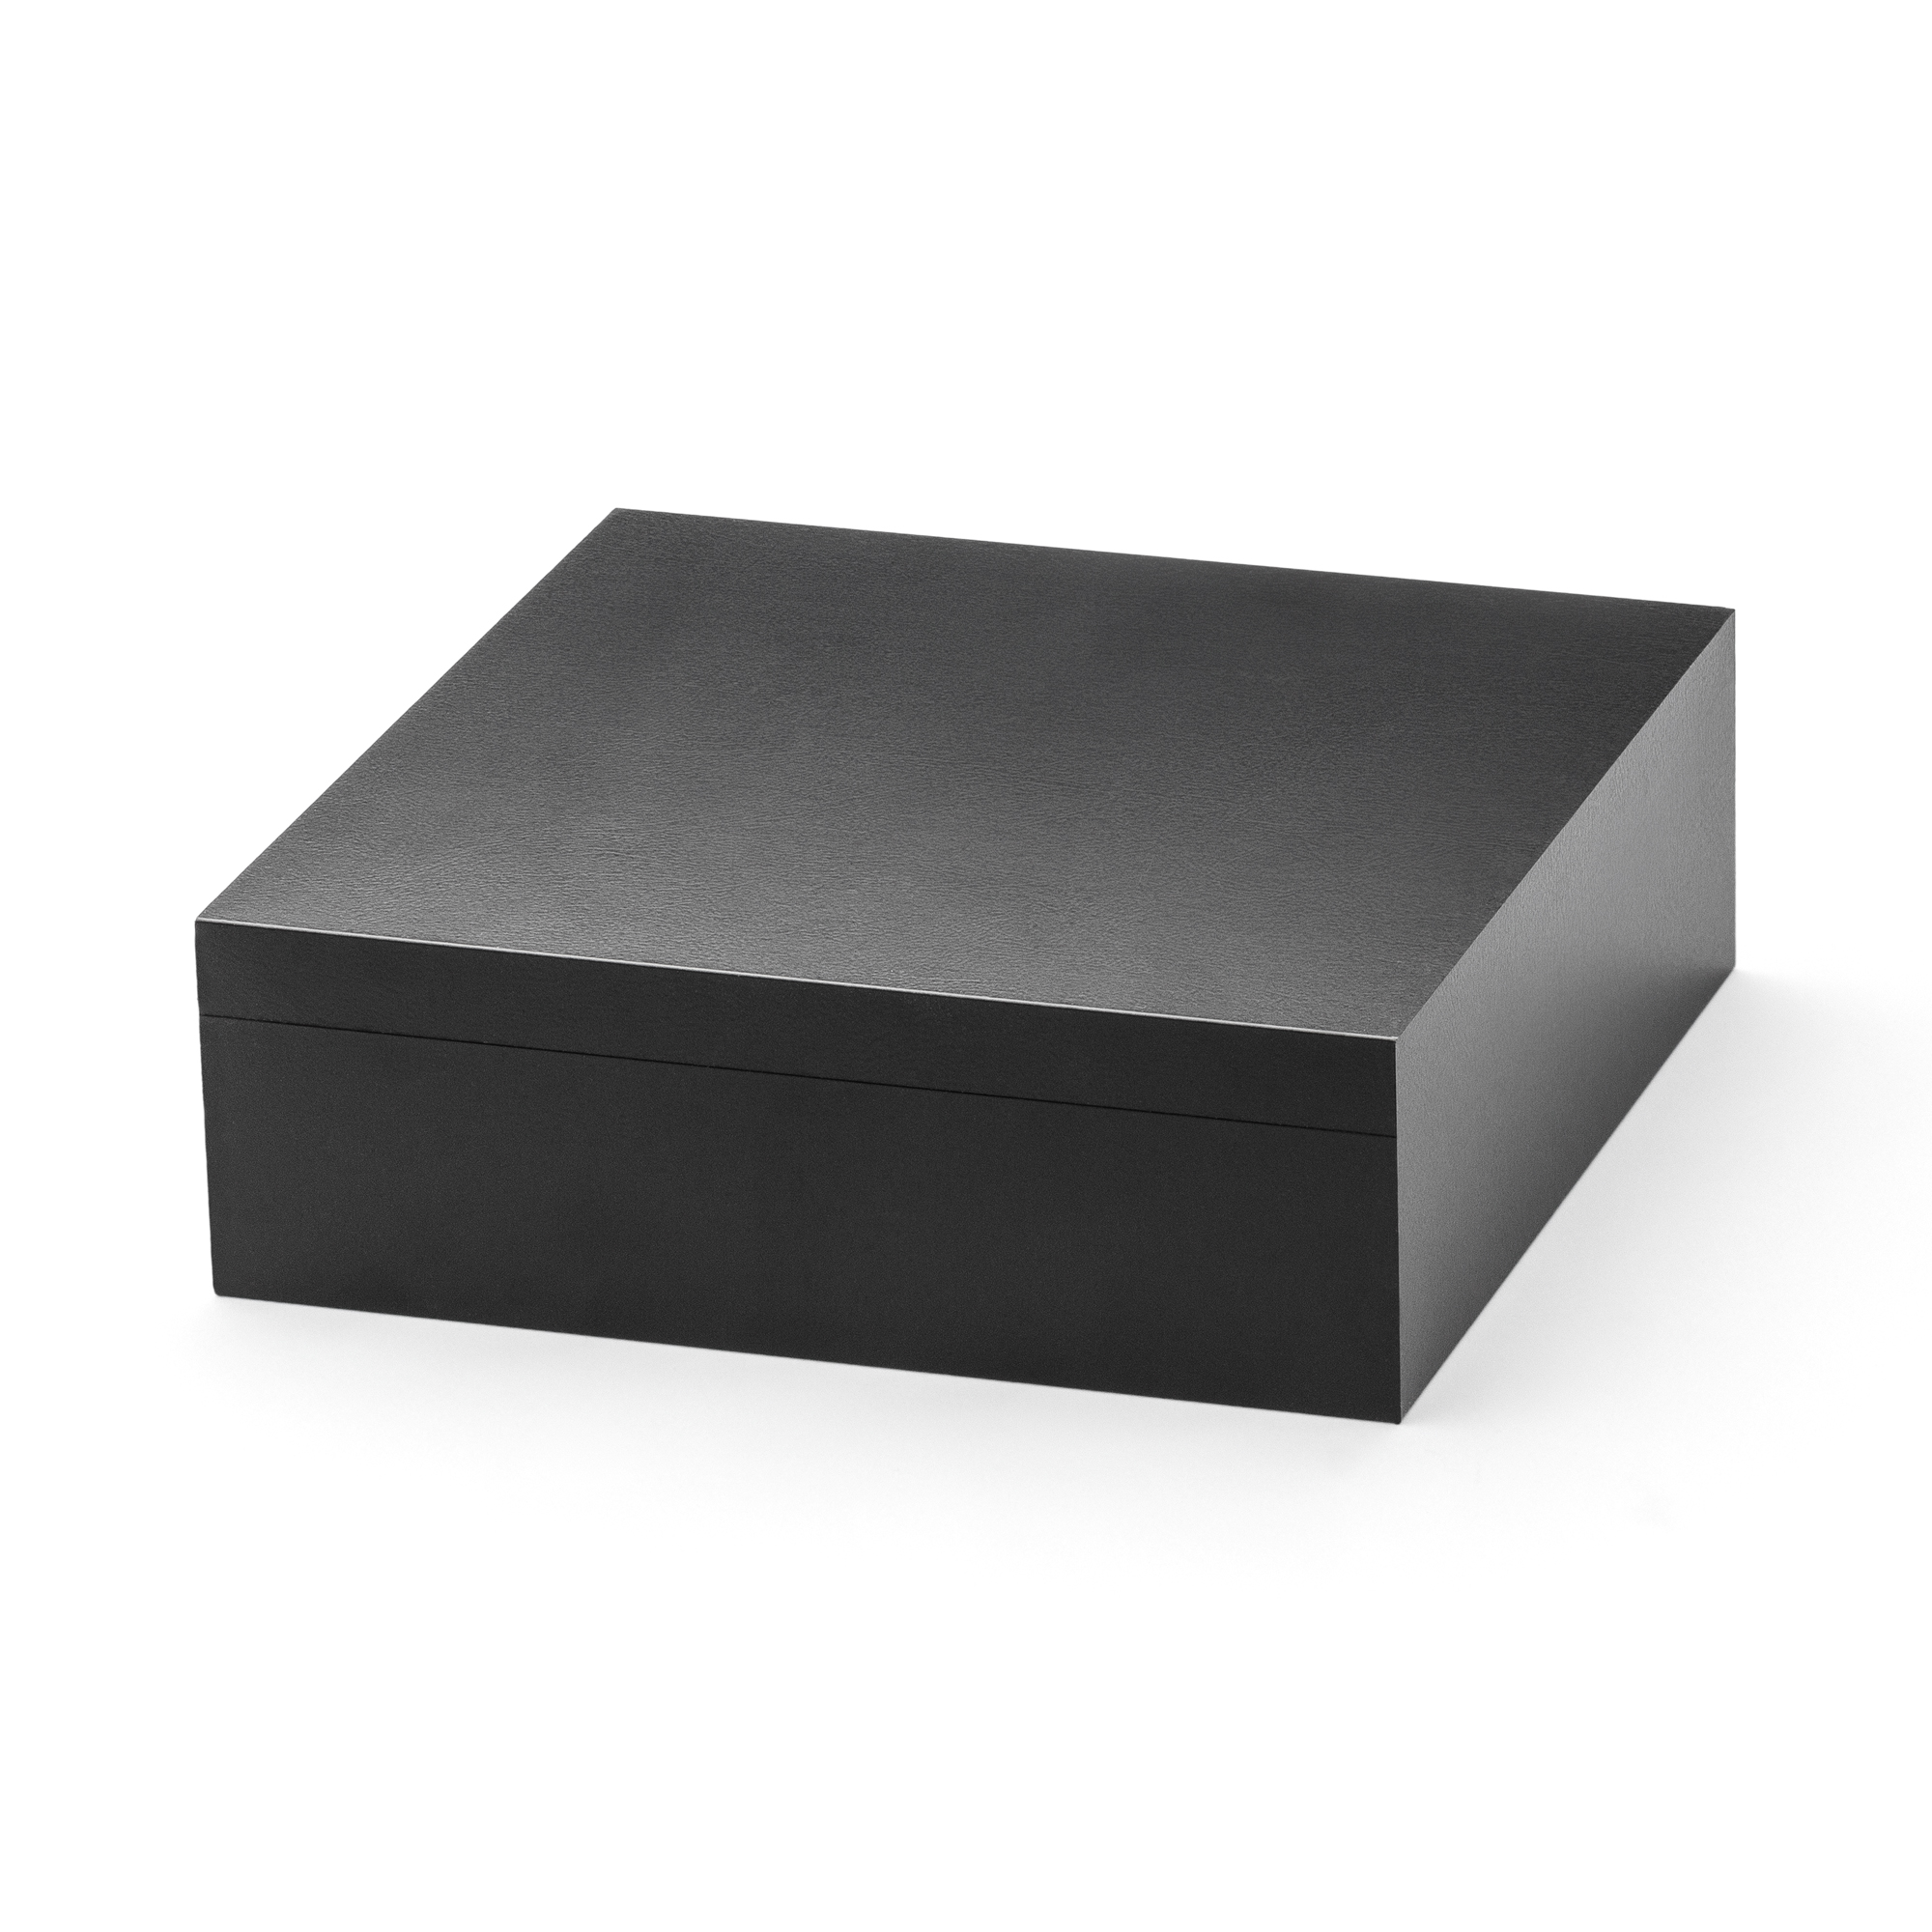 Blackbox Universal groß, 120 x 120 x 40 mm